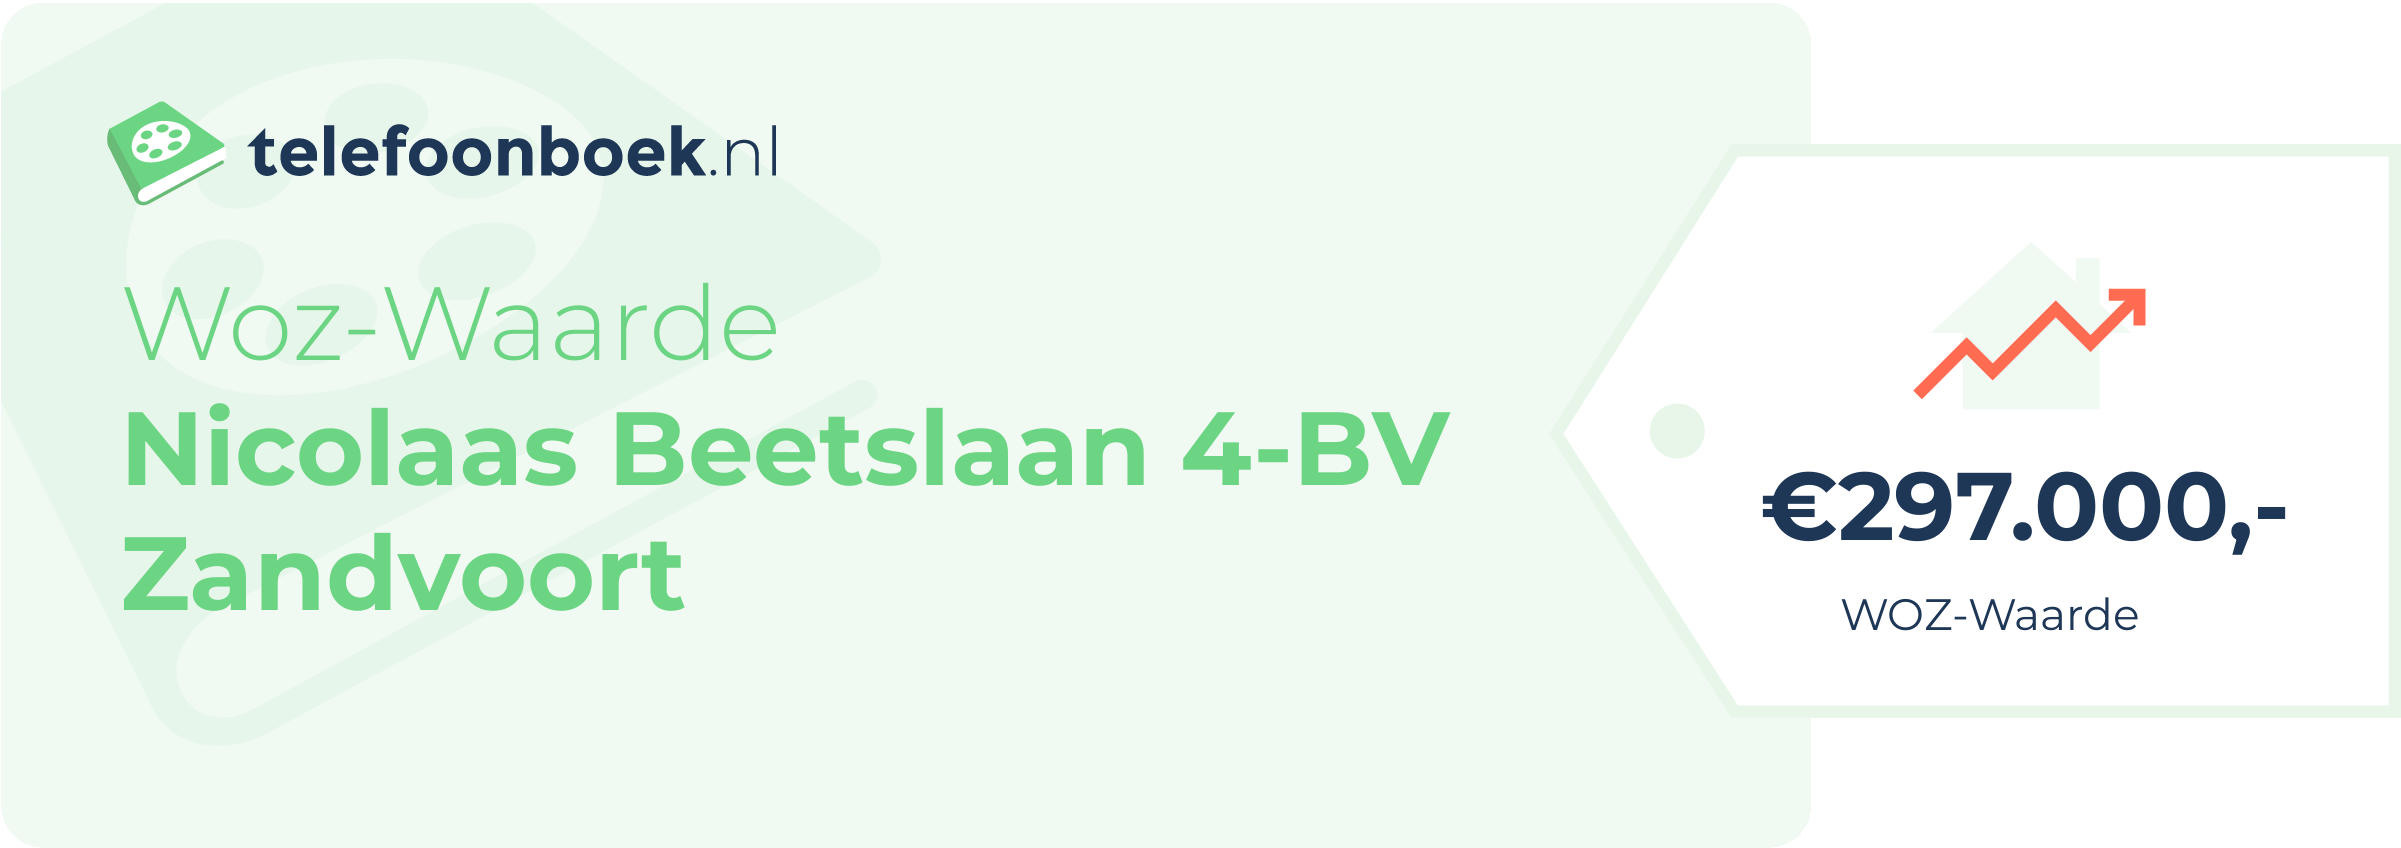 WOZ-waarde Nicolaas Beetslaan 4-BV Zandvoort